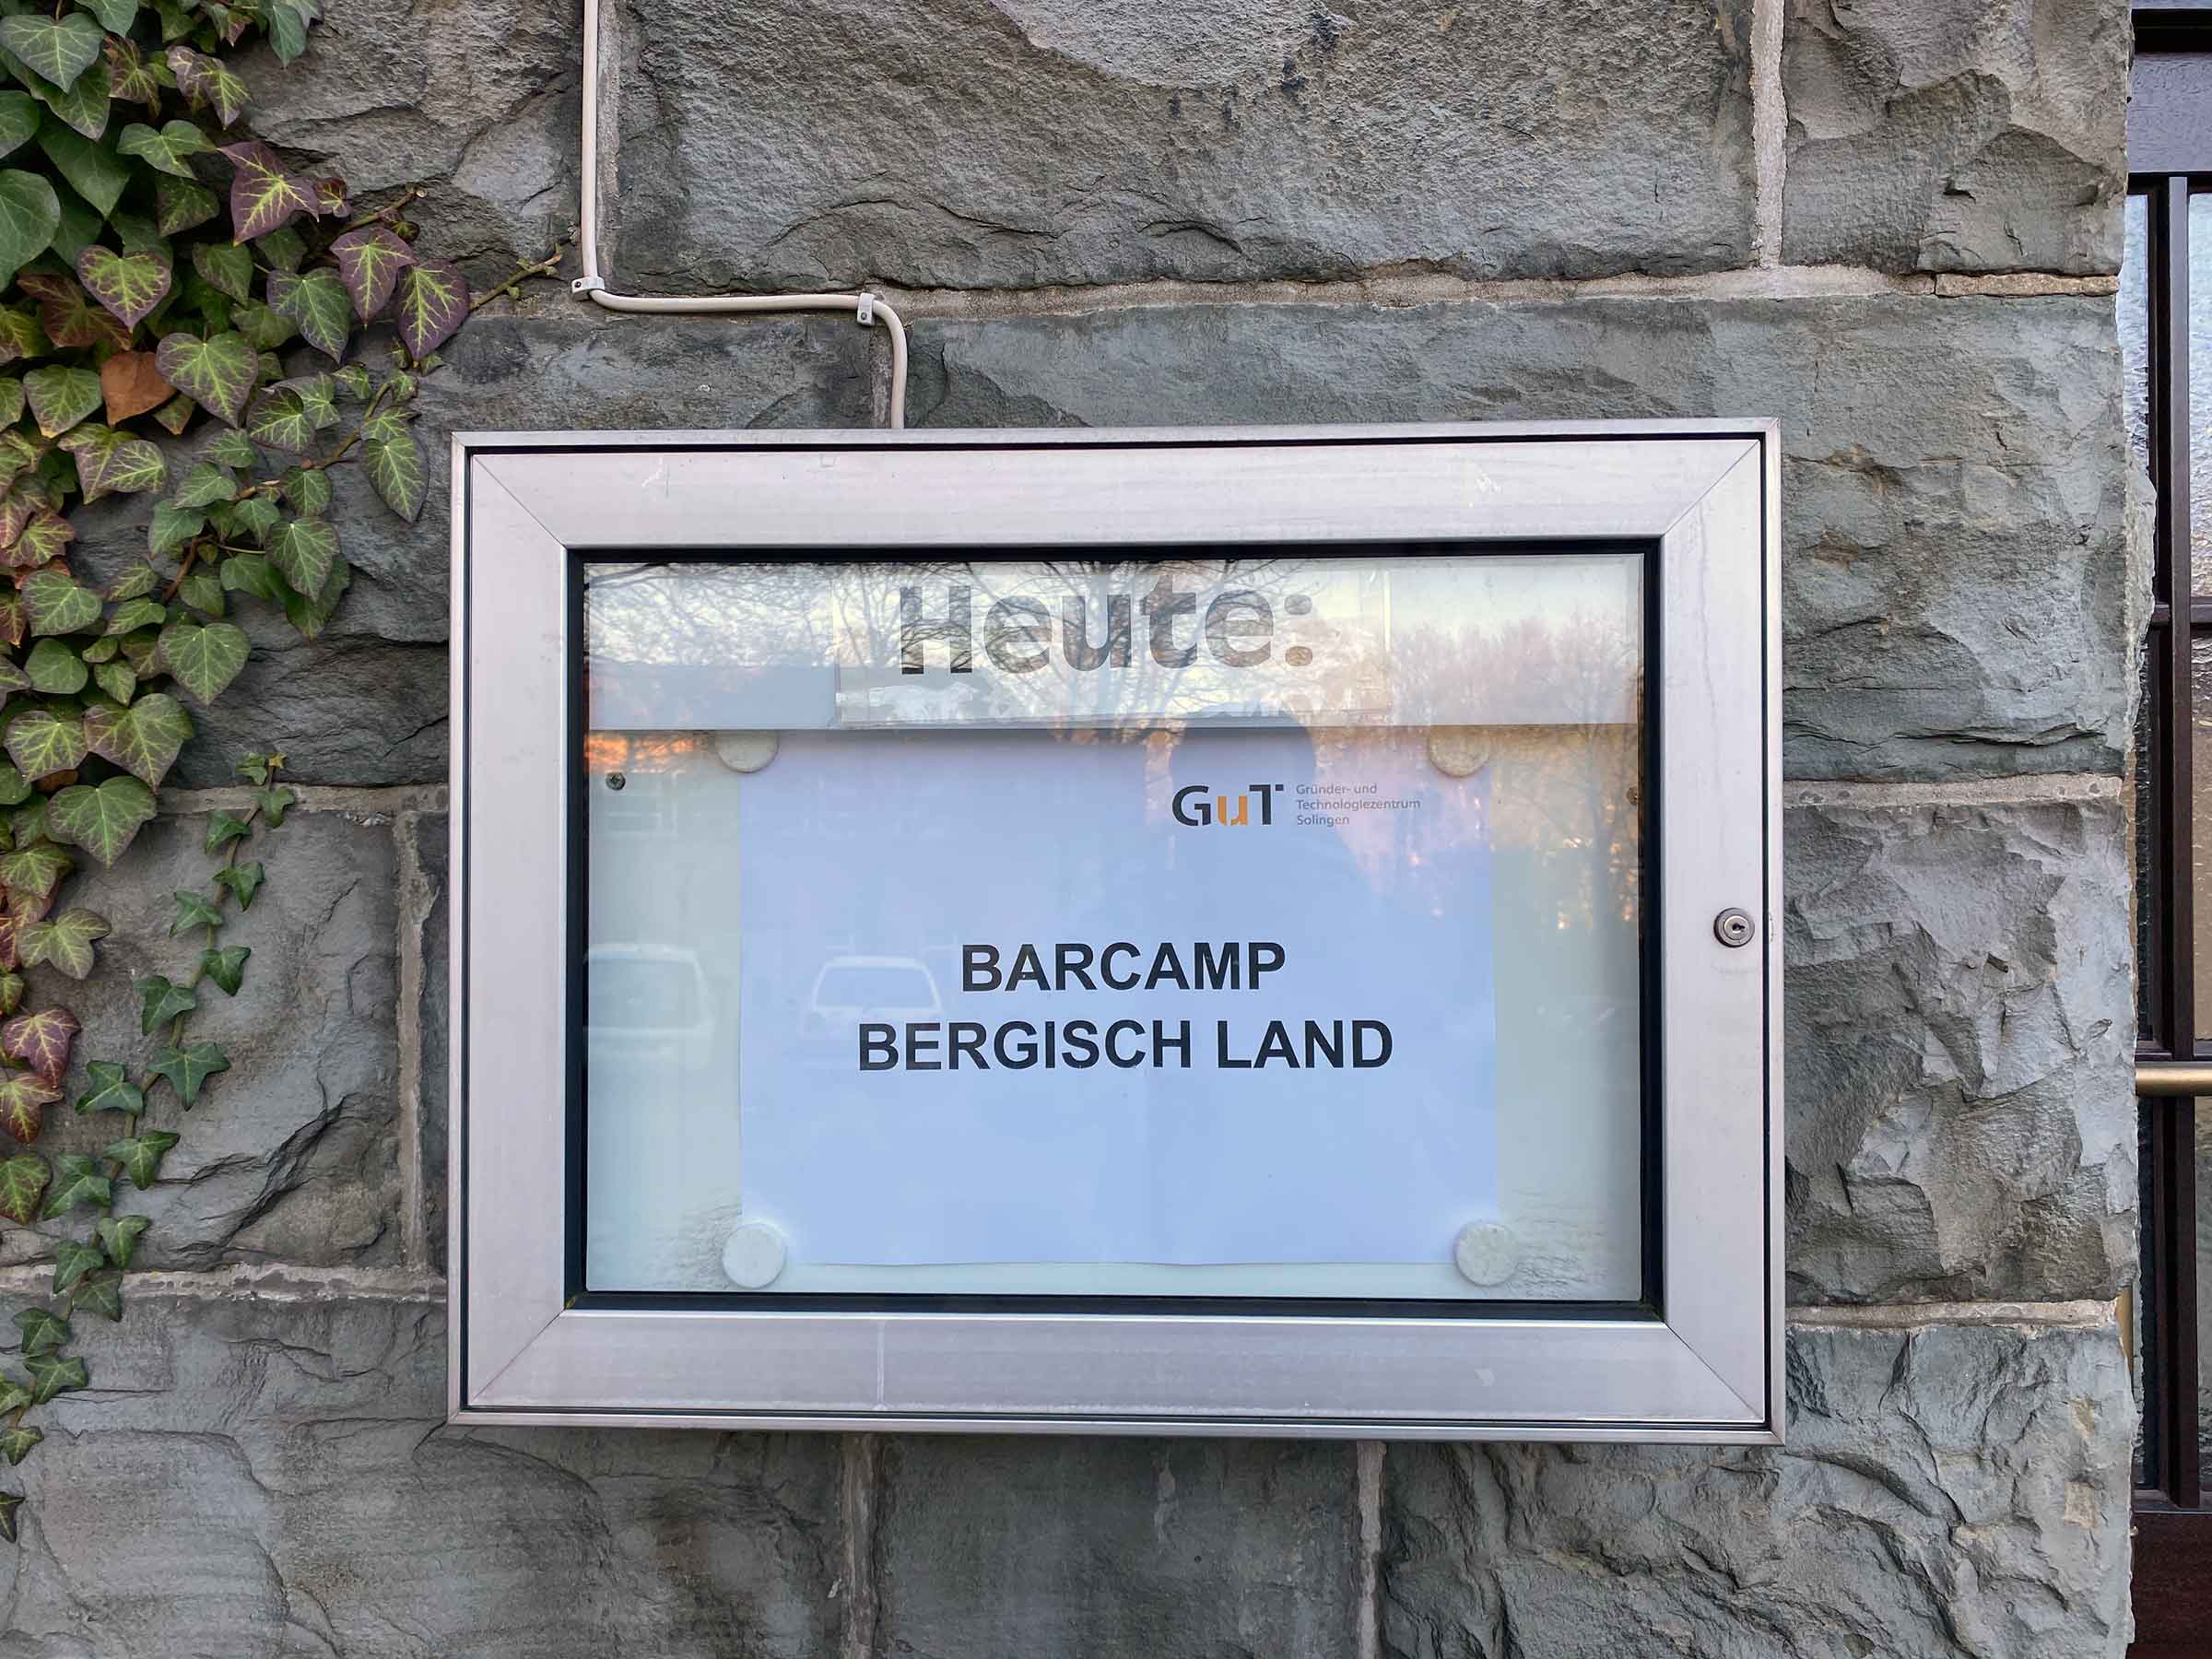 Ein Schaukasten mit der Aufschrift „Heute:“, darin der Aushang: Barcamp Bergisch Land.